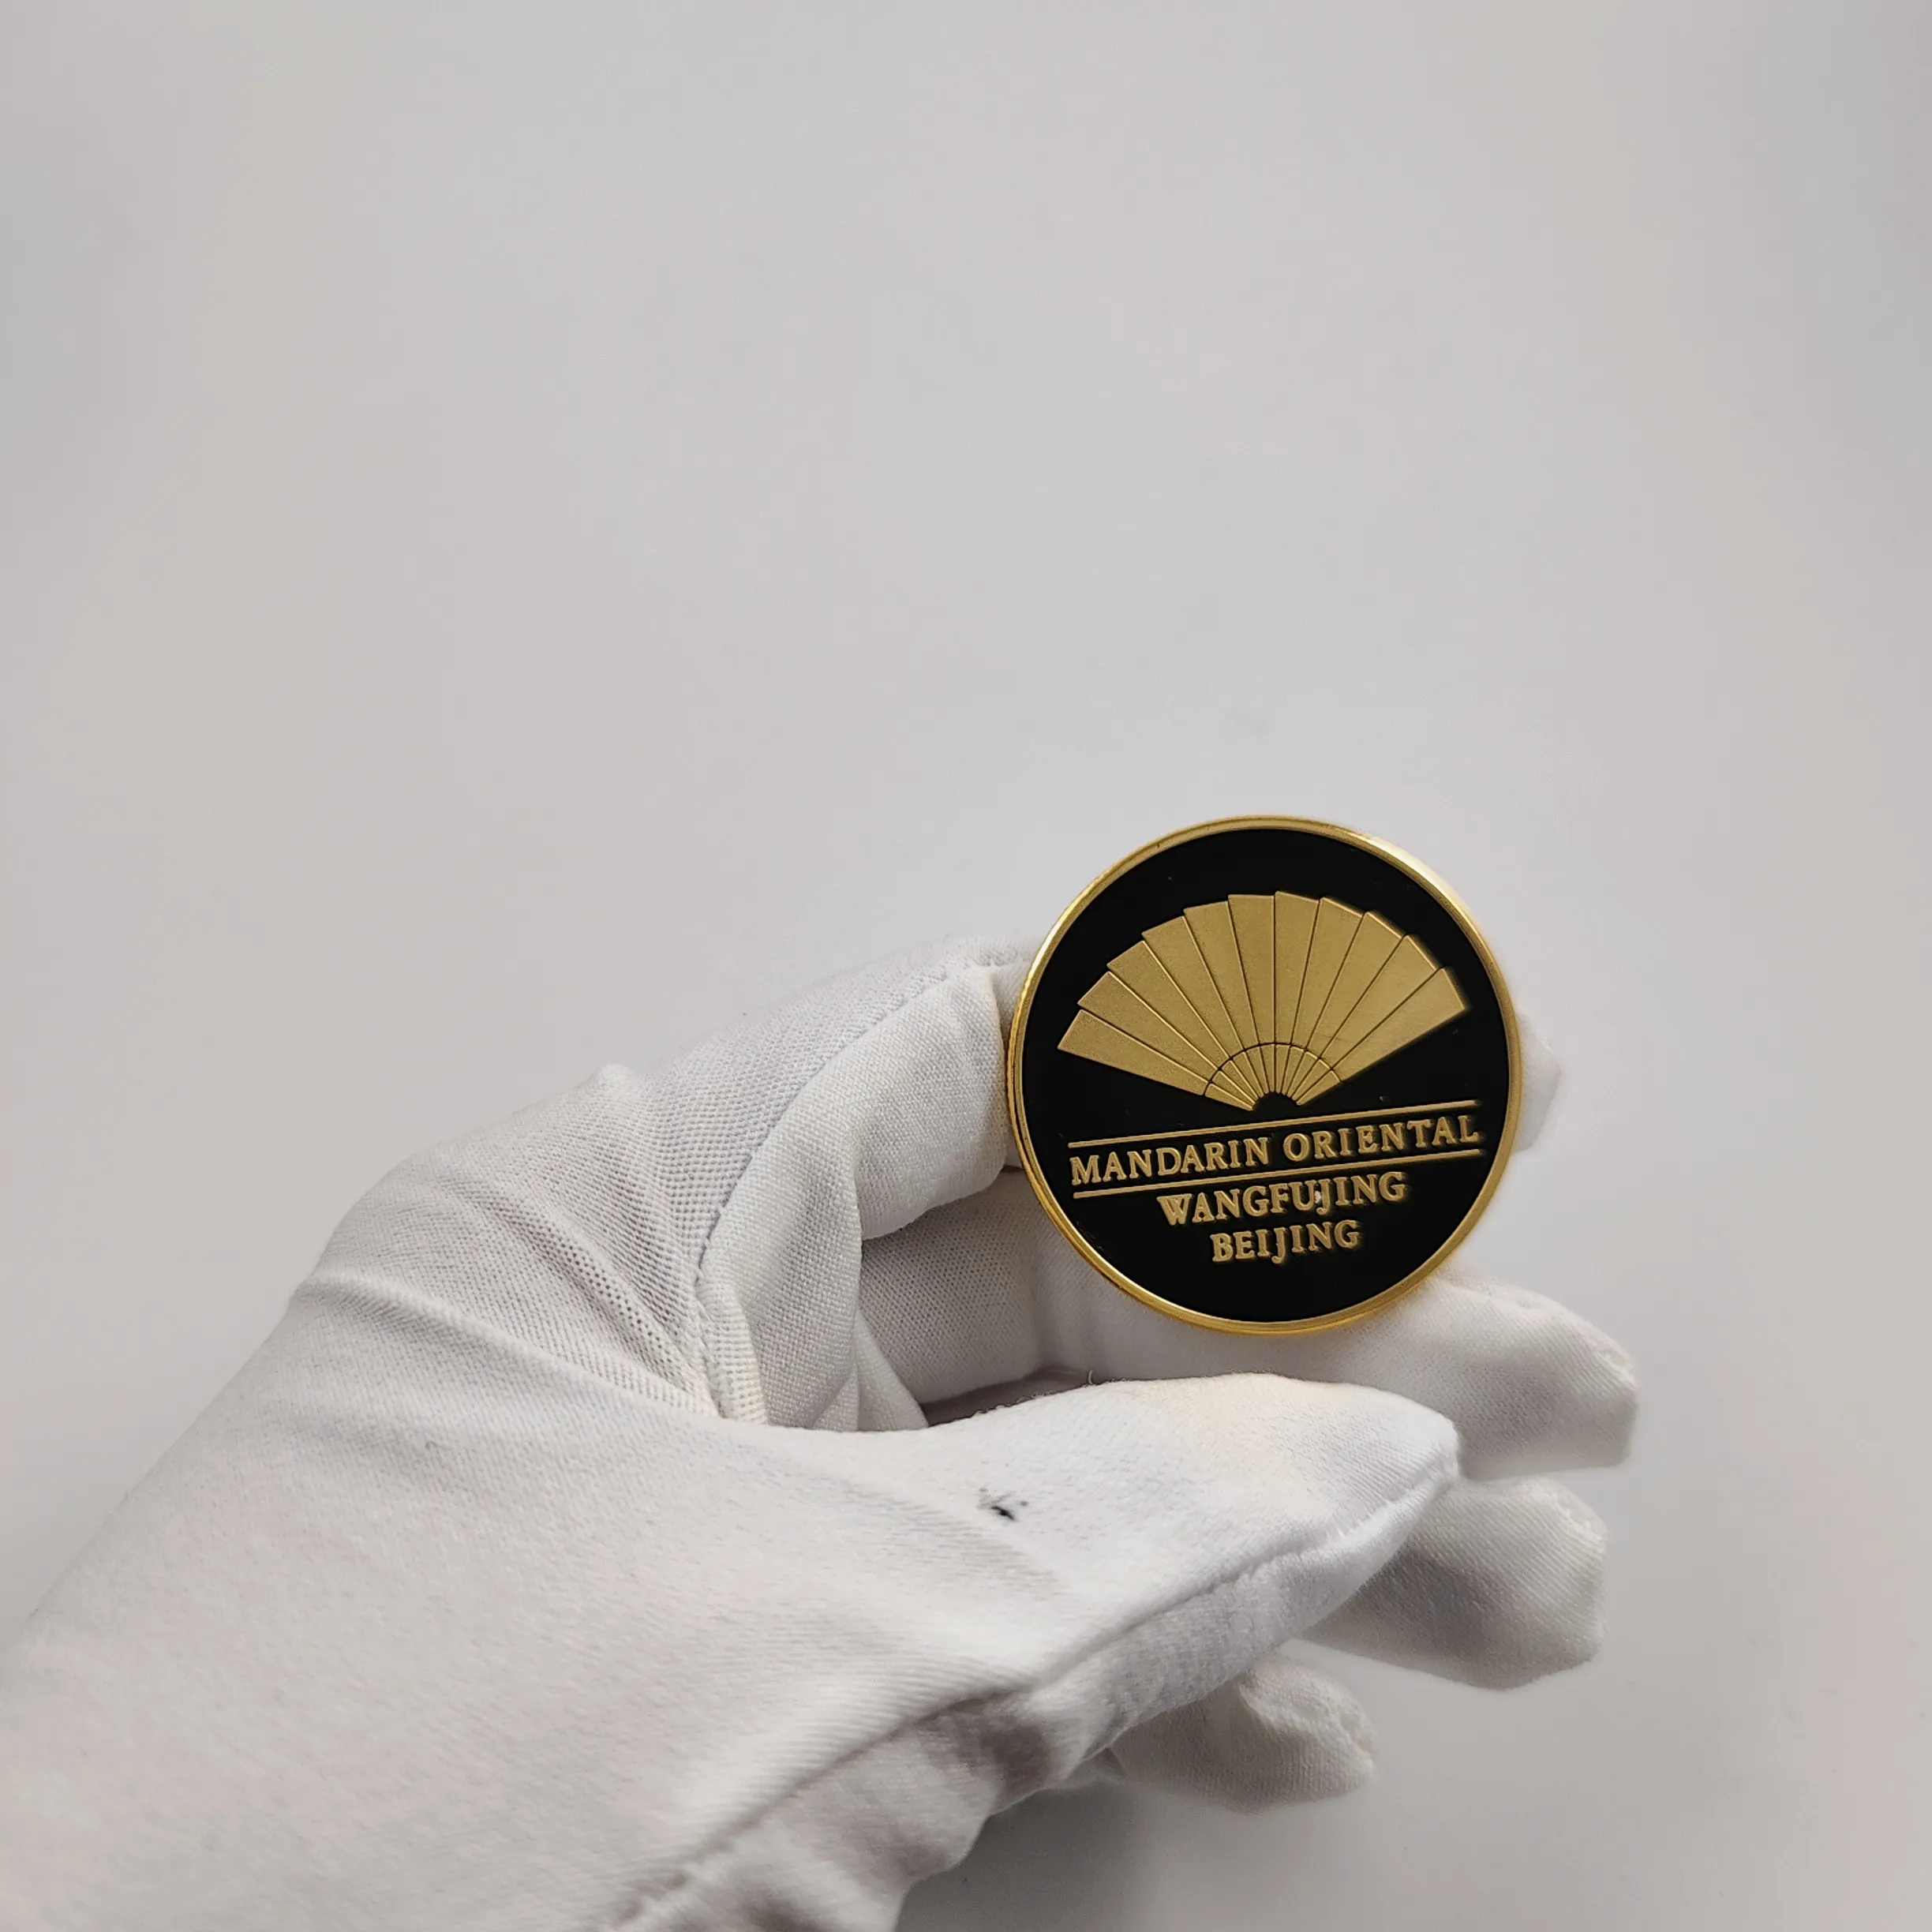 प्रीमियम रंगीन मंदारिन ओरिएंटल सिटी टूरिज्म सिक्के असली सोने में डूबा हुआ चांदी चढ़ाया हुआ तांबे का सिक्का